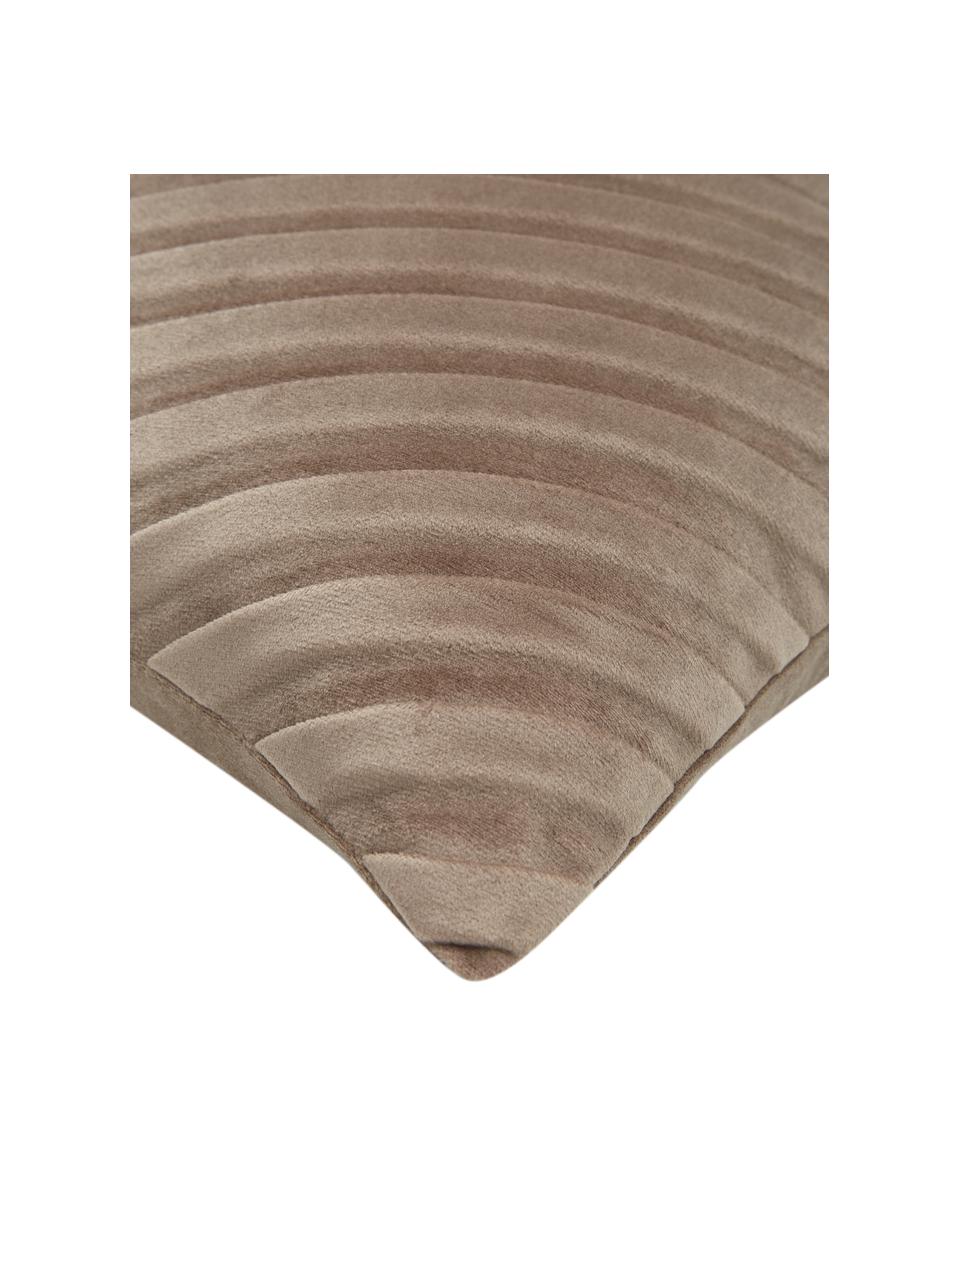 Samt-Kissenhülle Lucie in Taupe mit Struktur-Oberfläche, 100% Samt (Polyester), Beige, B 30 x L 50 cm